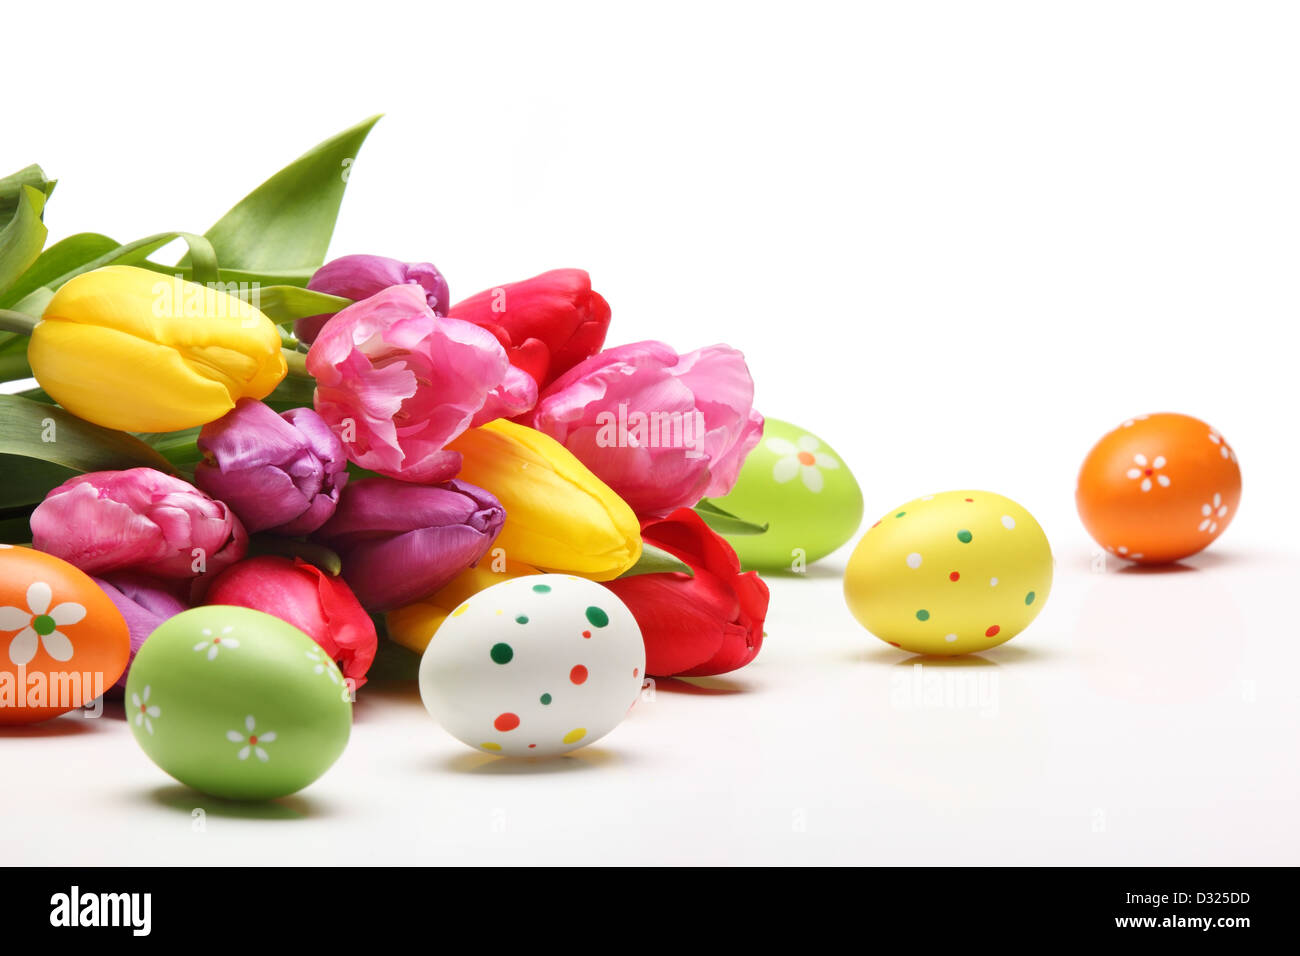 Los huevos de Pascua con tulipanes en fondo blanco. Foto de stock